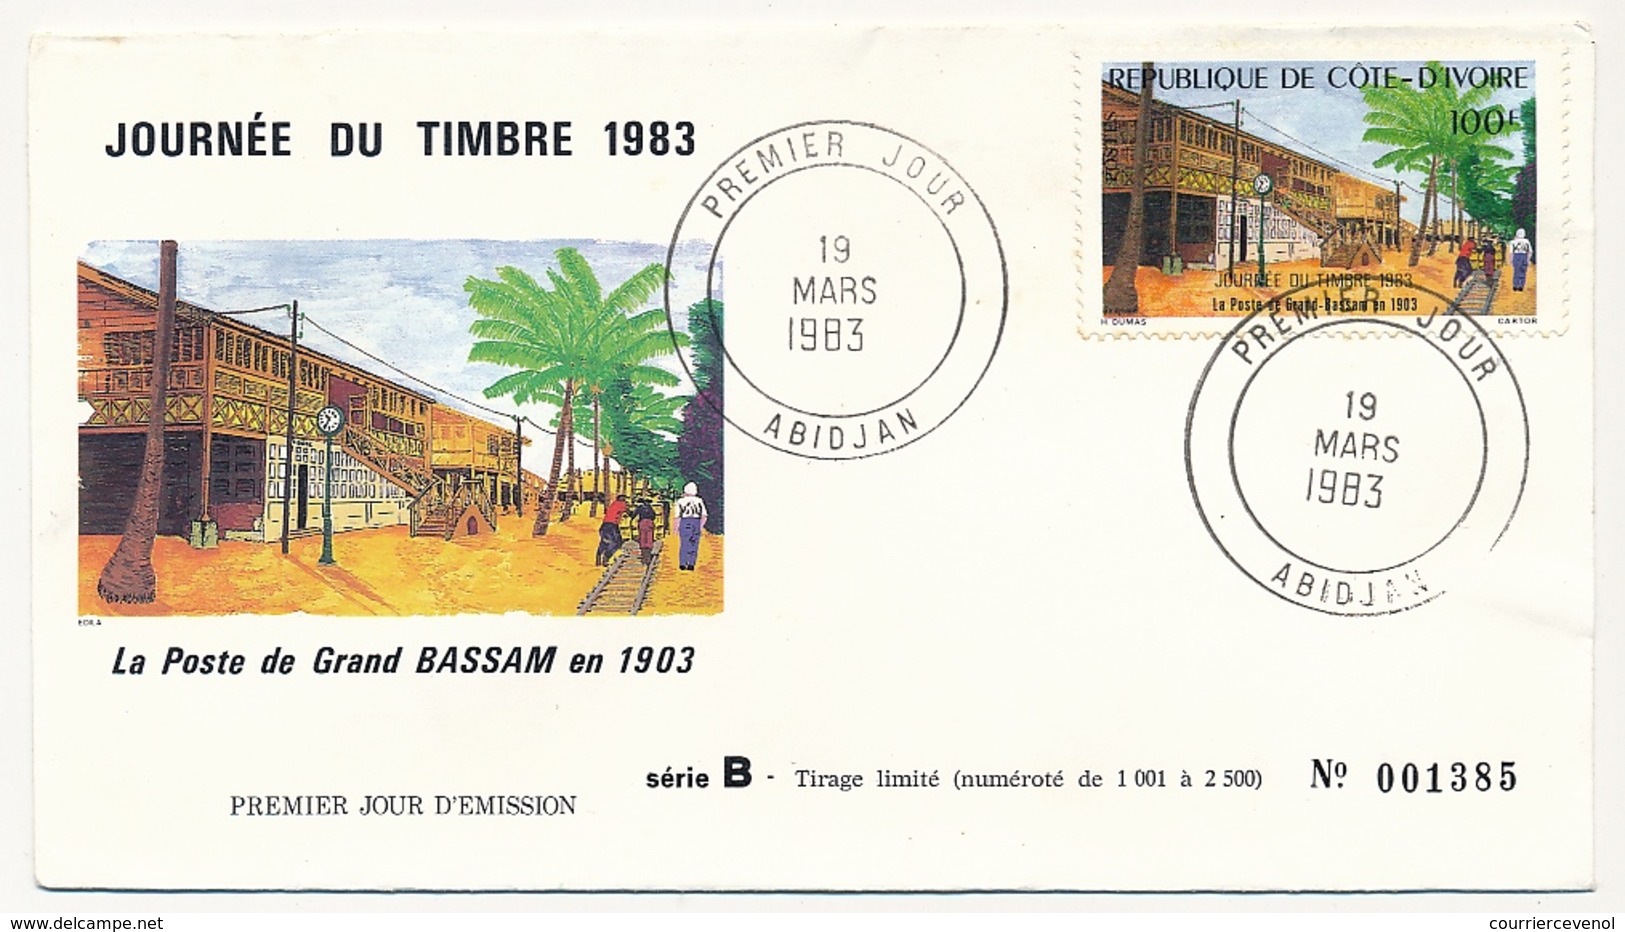 Côte D'Ivoire => Enveloppe FDC - 100f La Poste De Grand Bassam En 1903 - ABIDJAN - 19 Mars 1983 - Côte D'Ivoire (1960-...)